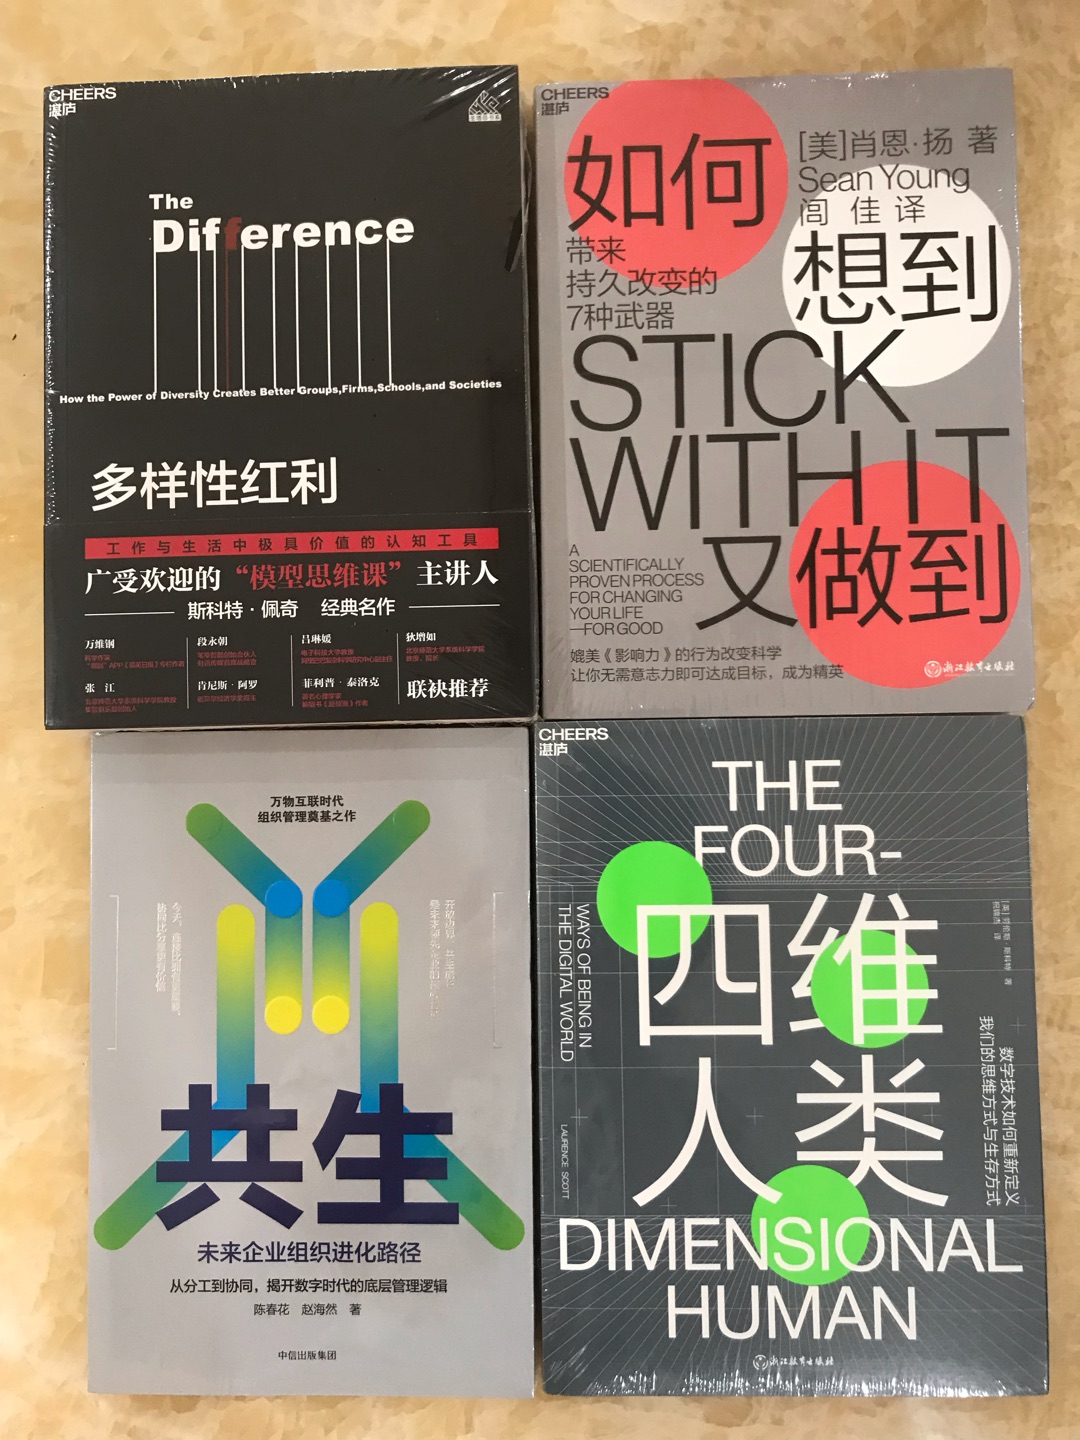 終於收到這幾本書了。現在都在京東買書了。